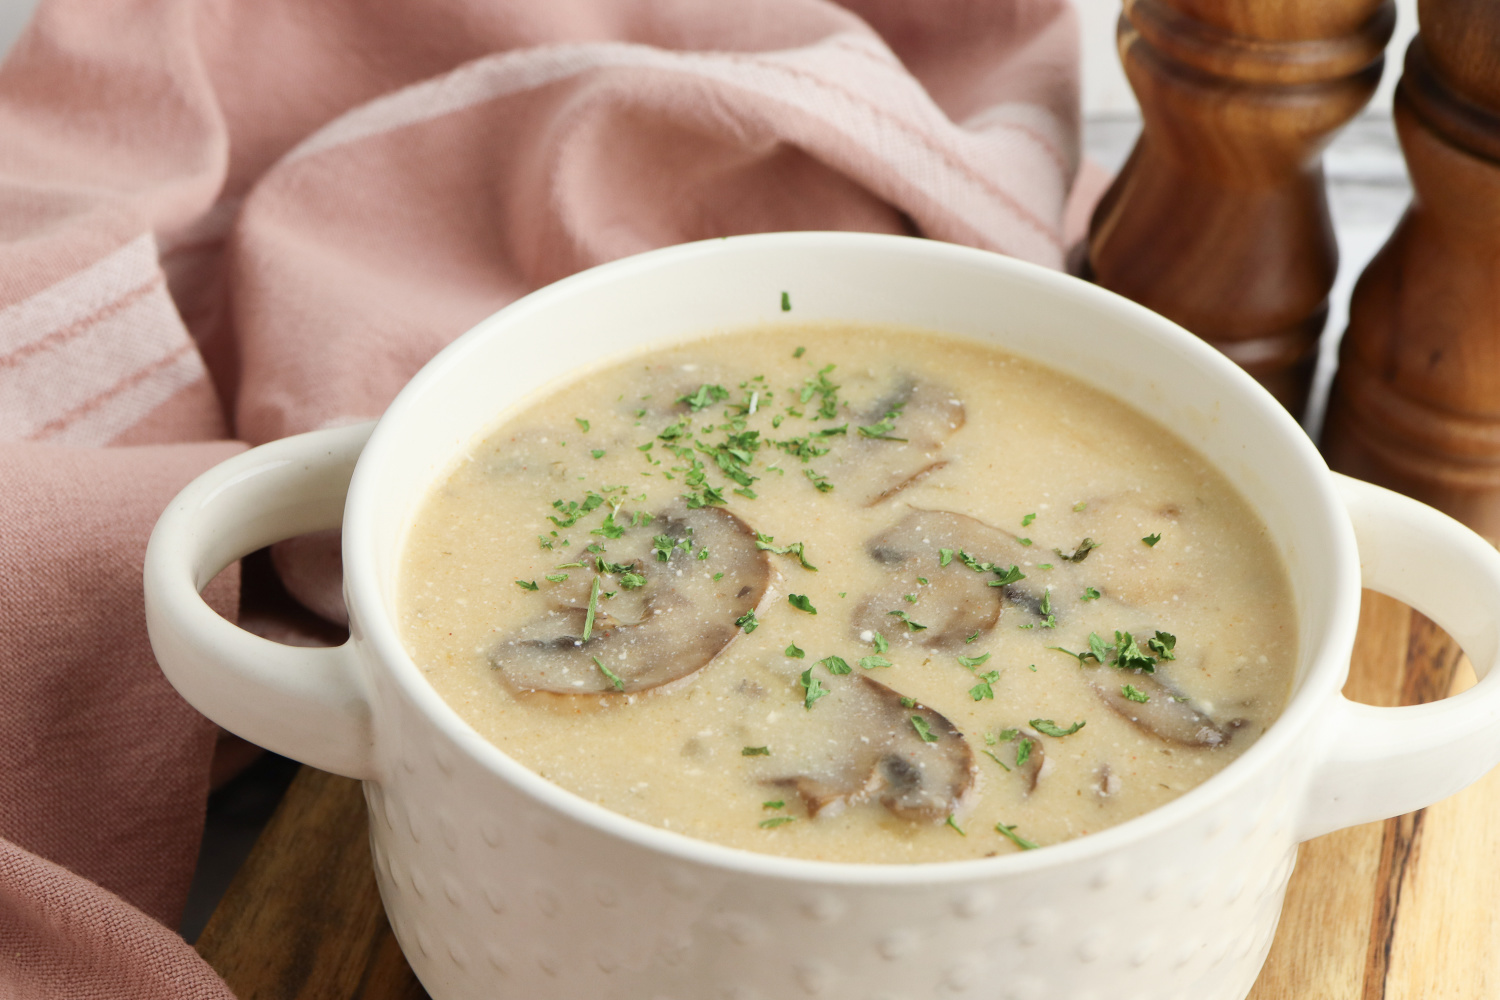 hungarian mushroom soup